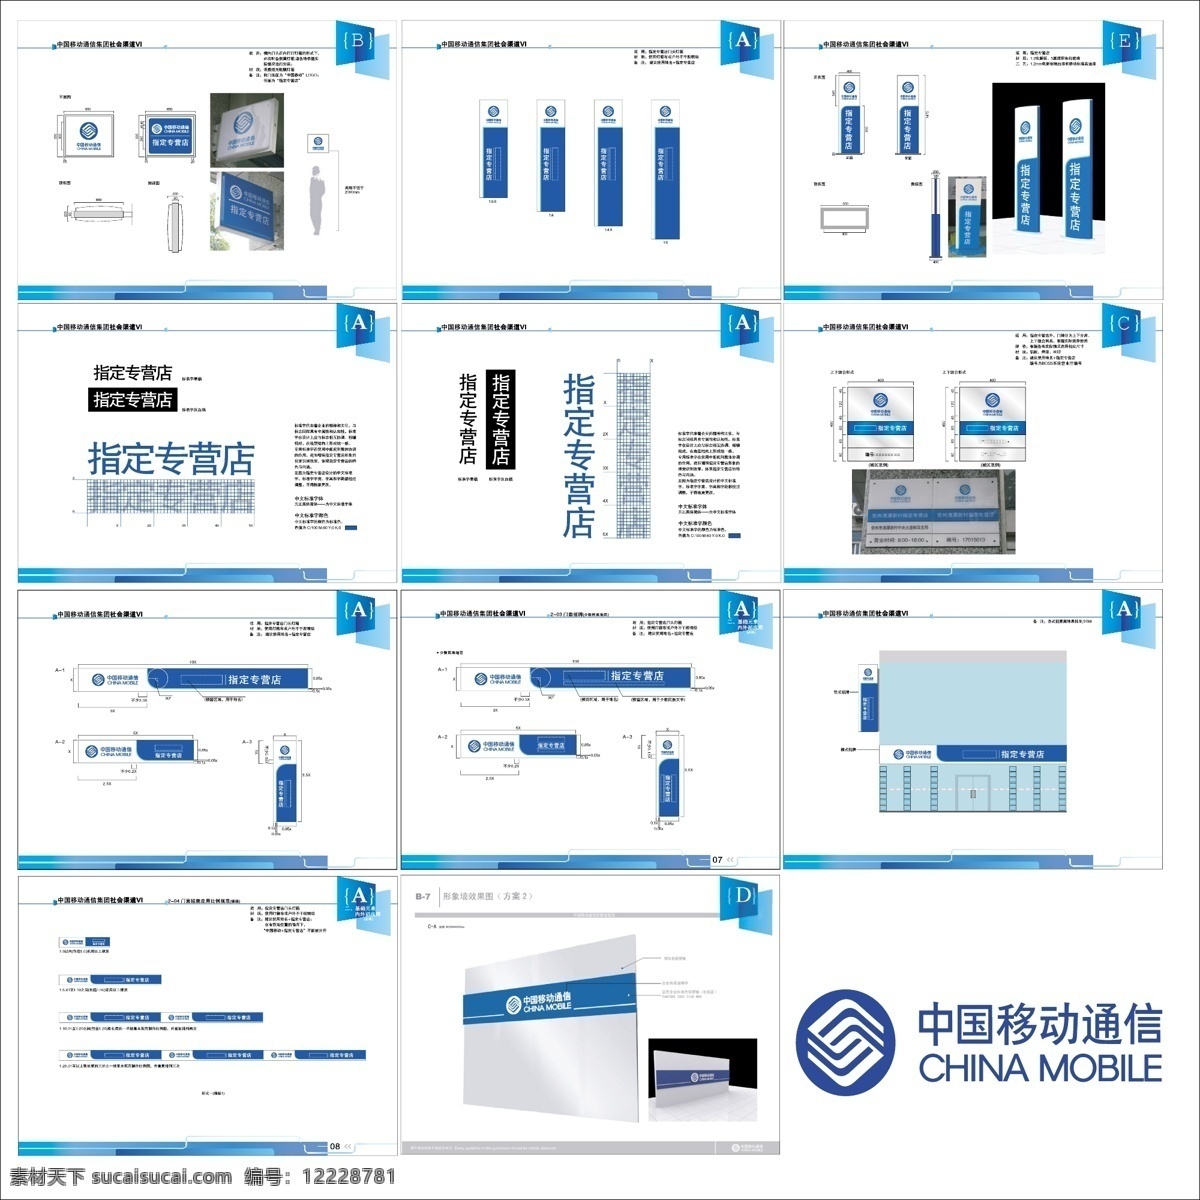 vi设计 中国移动 矢量 模板下载 尺寸 图 效果图 广告牌 指定 专营店 矢量图 现代科技